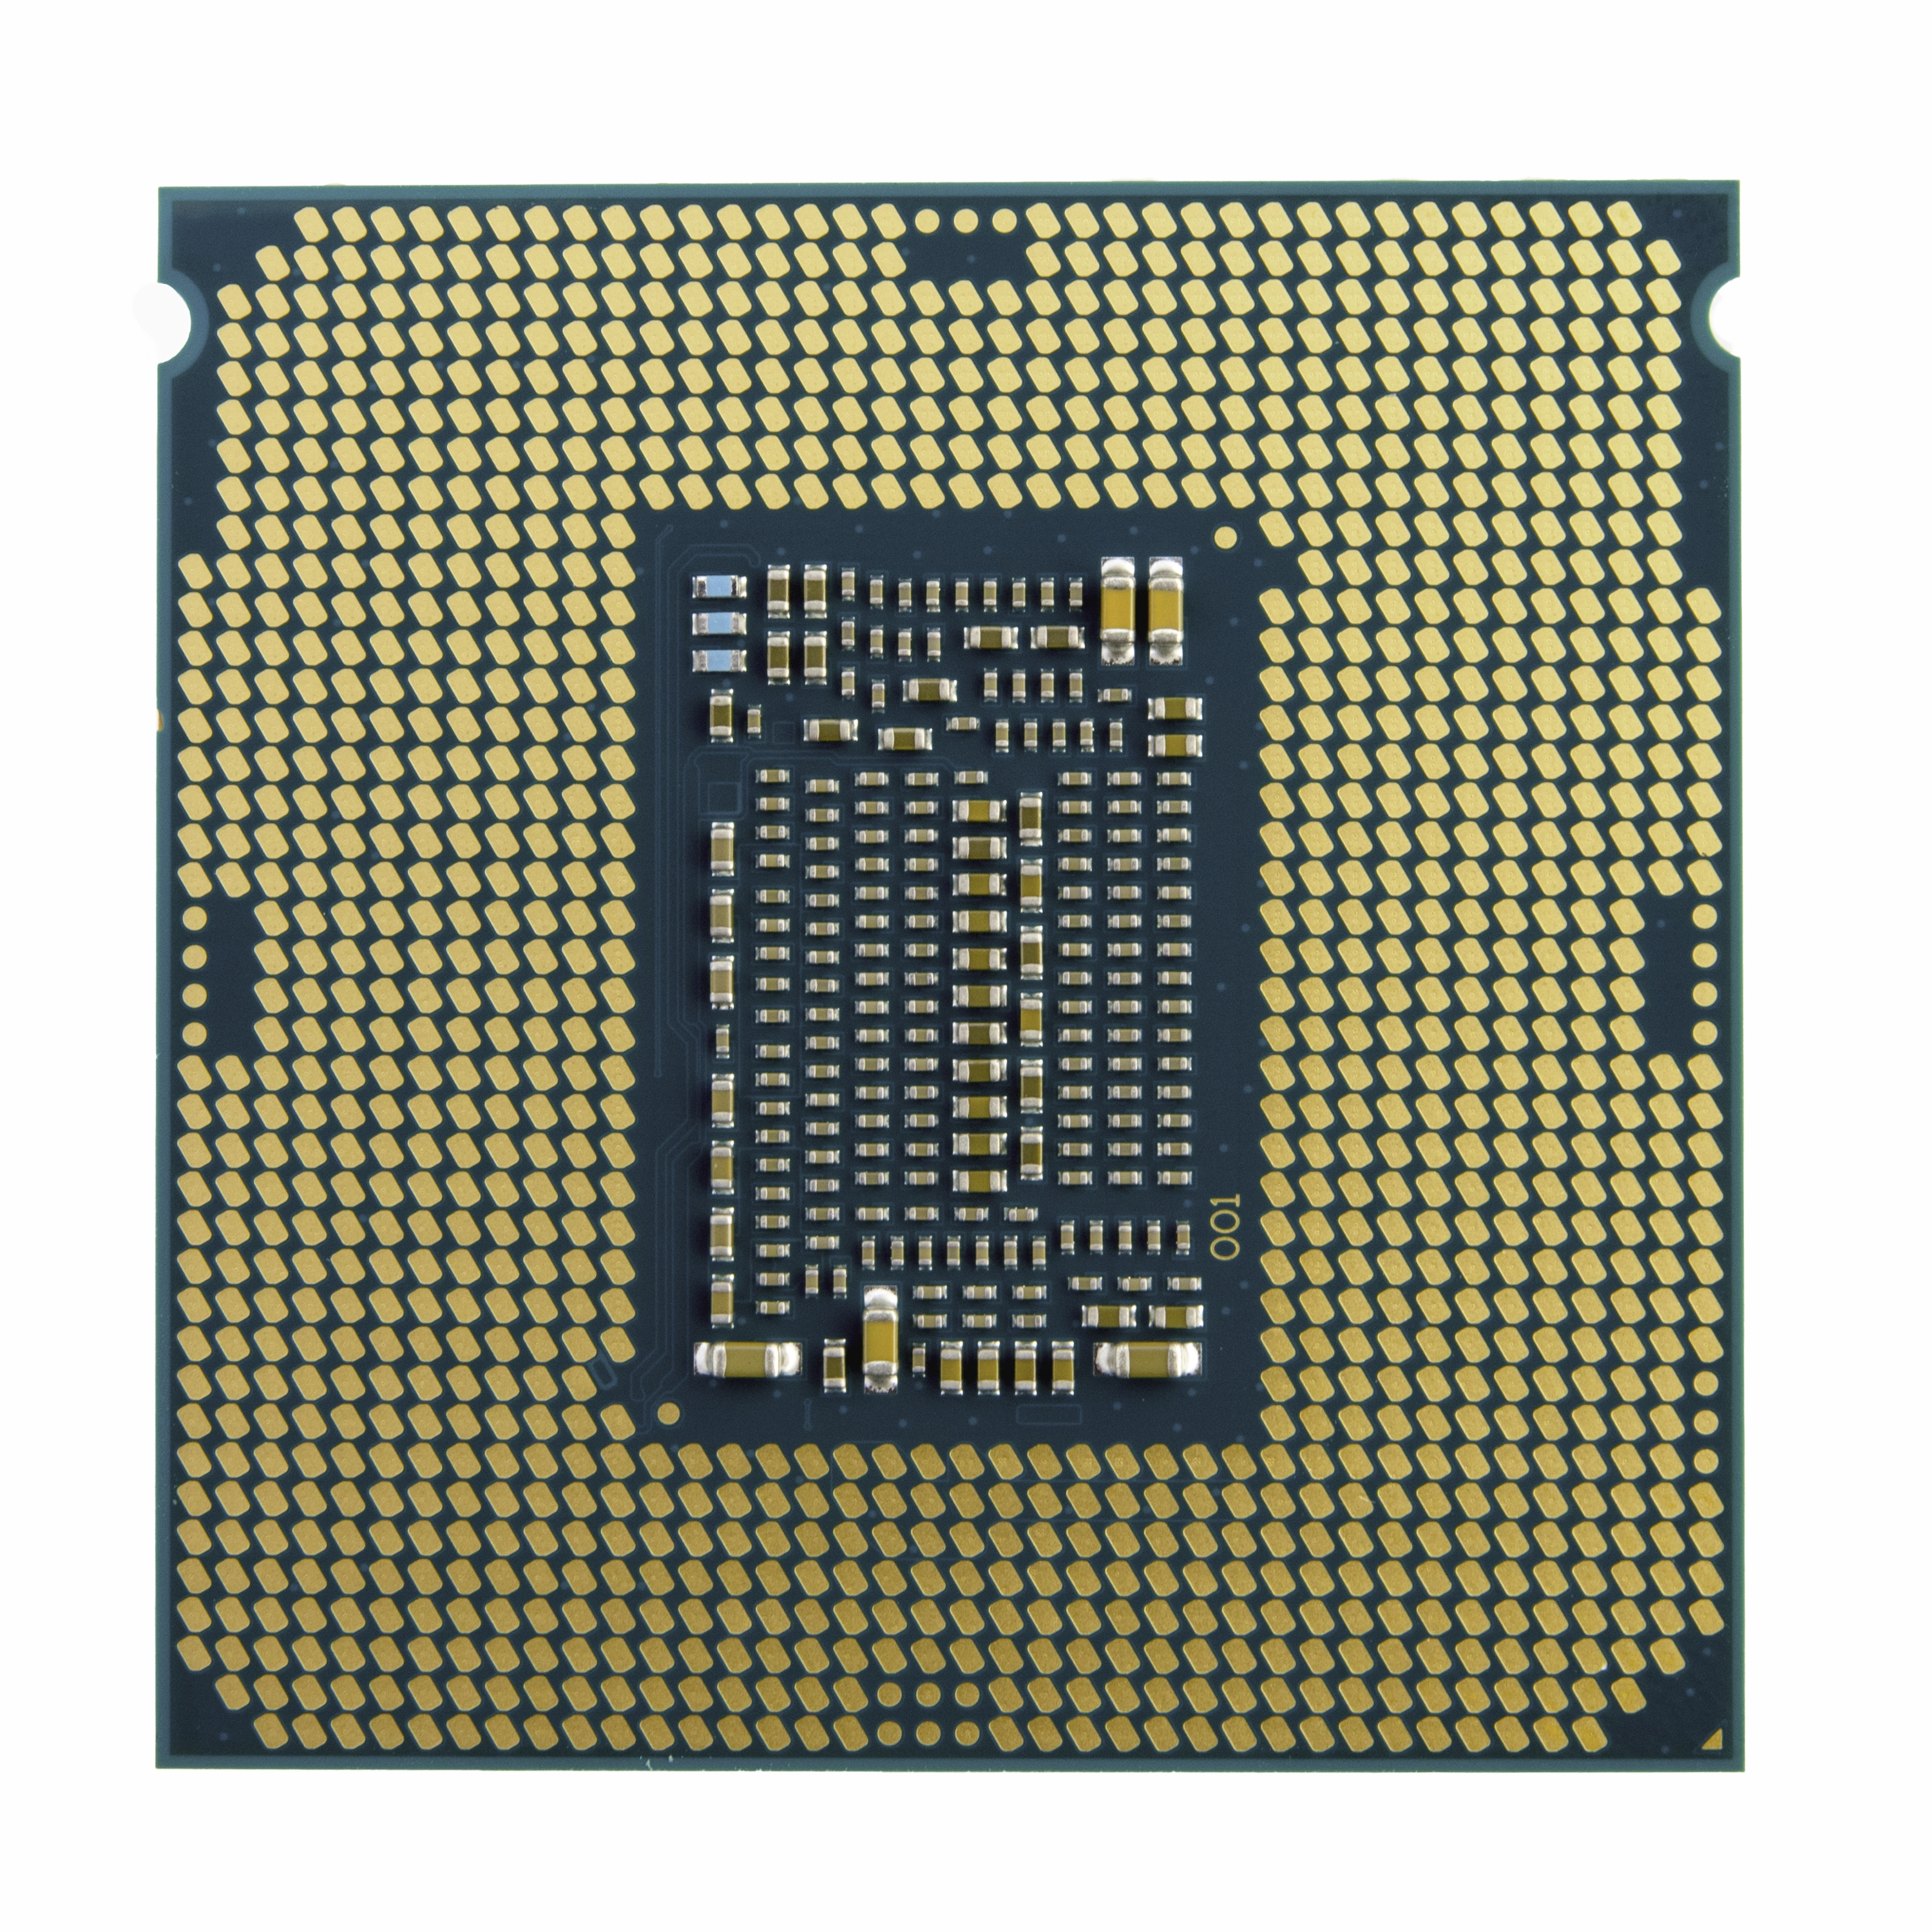 Procesador Intel Core I5 11400 2.6Ghz Lga1200 Bx8070811400